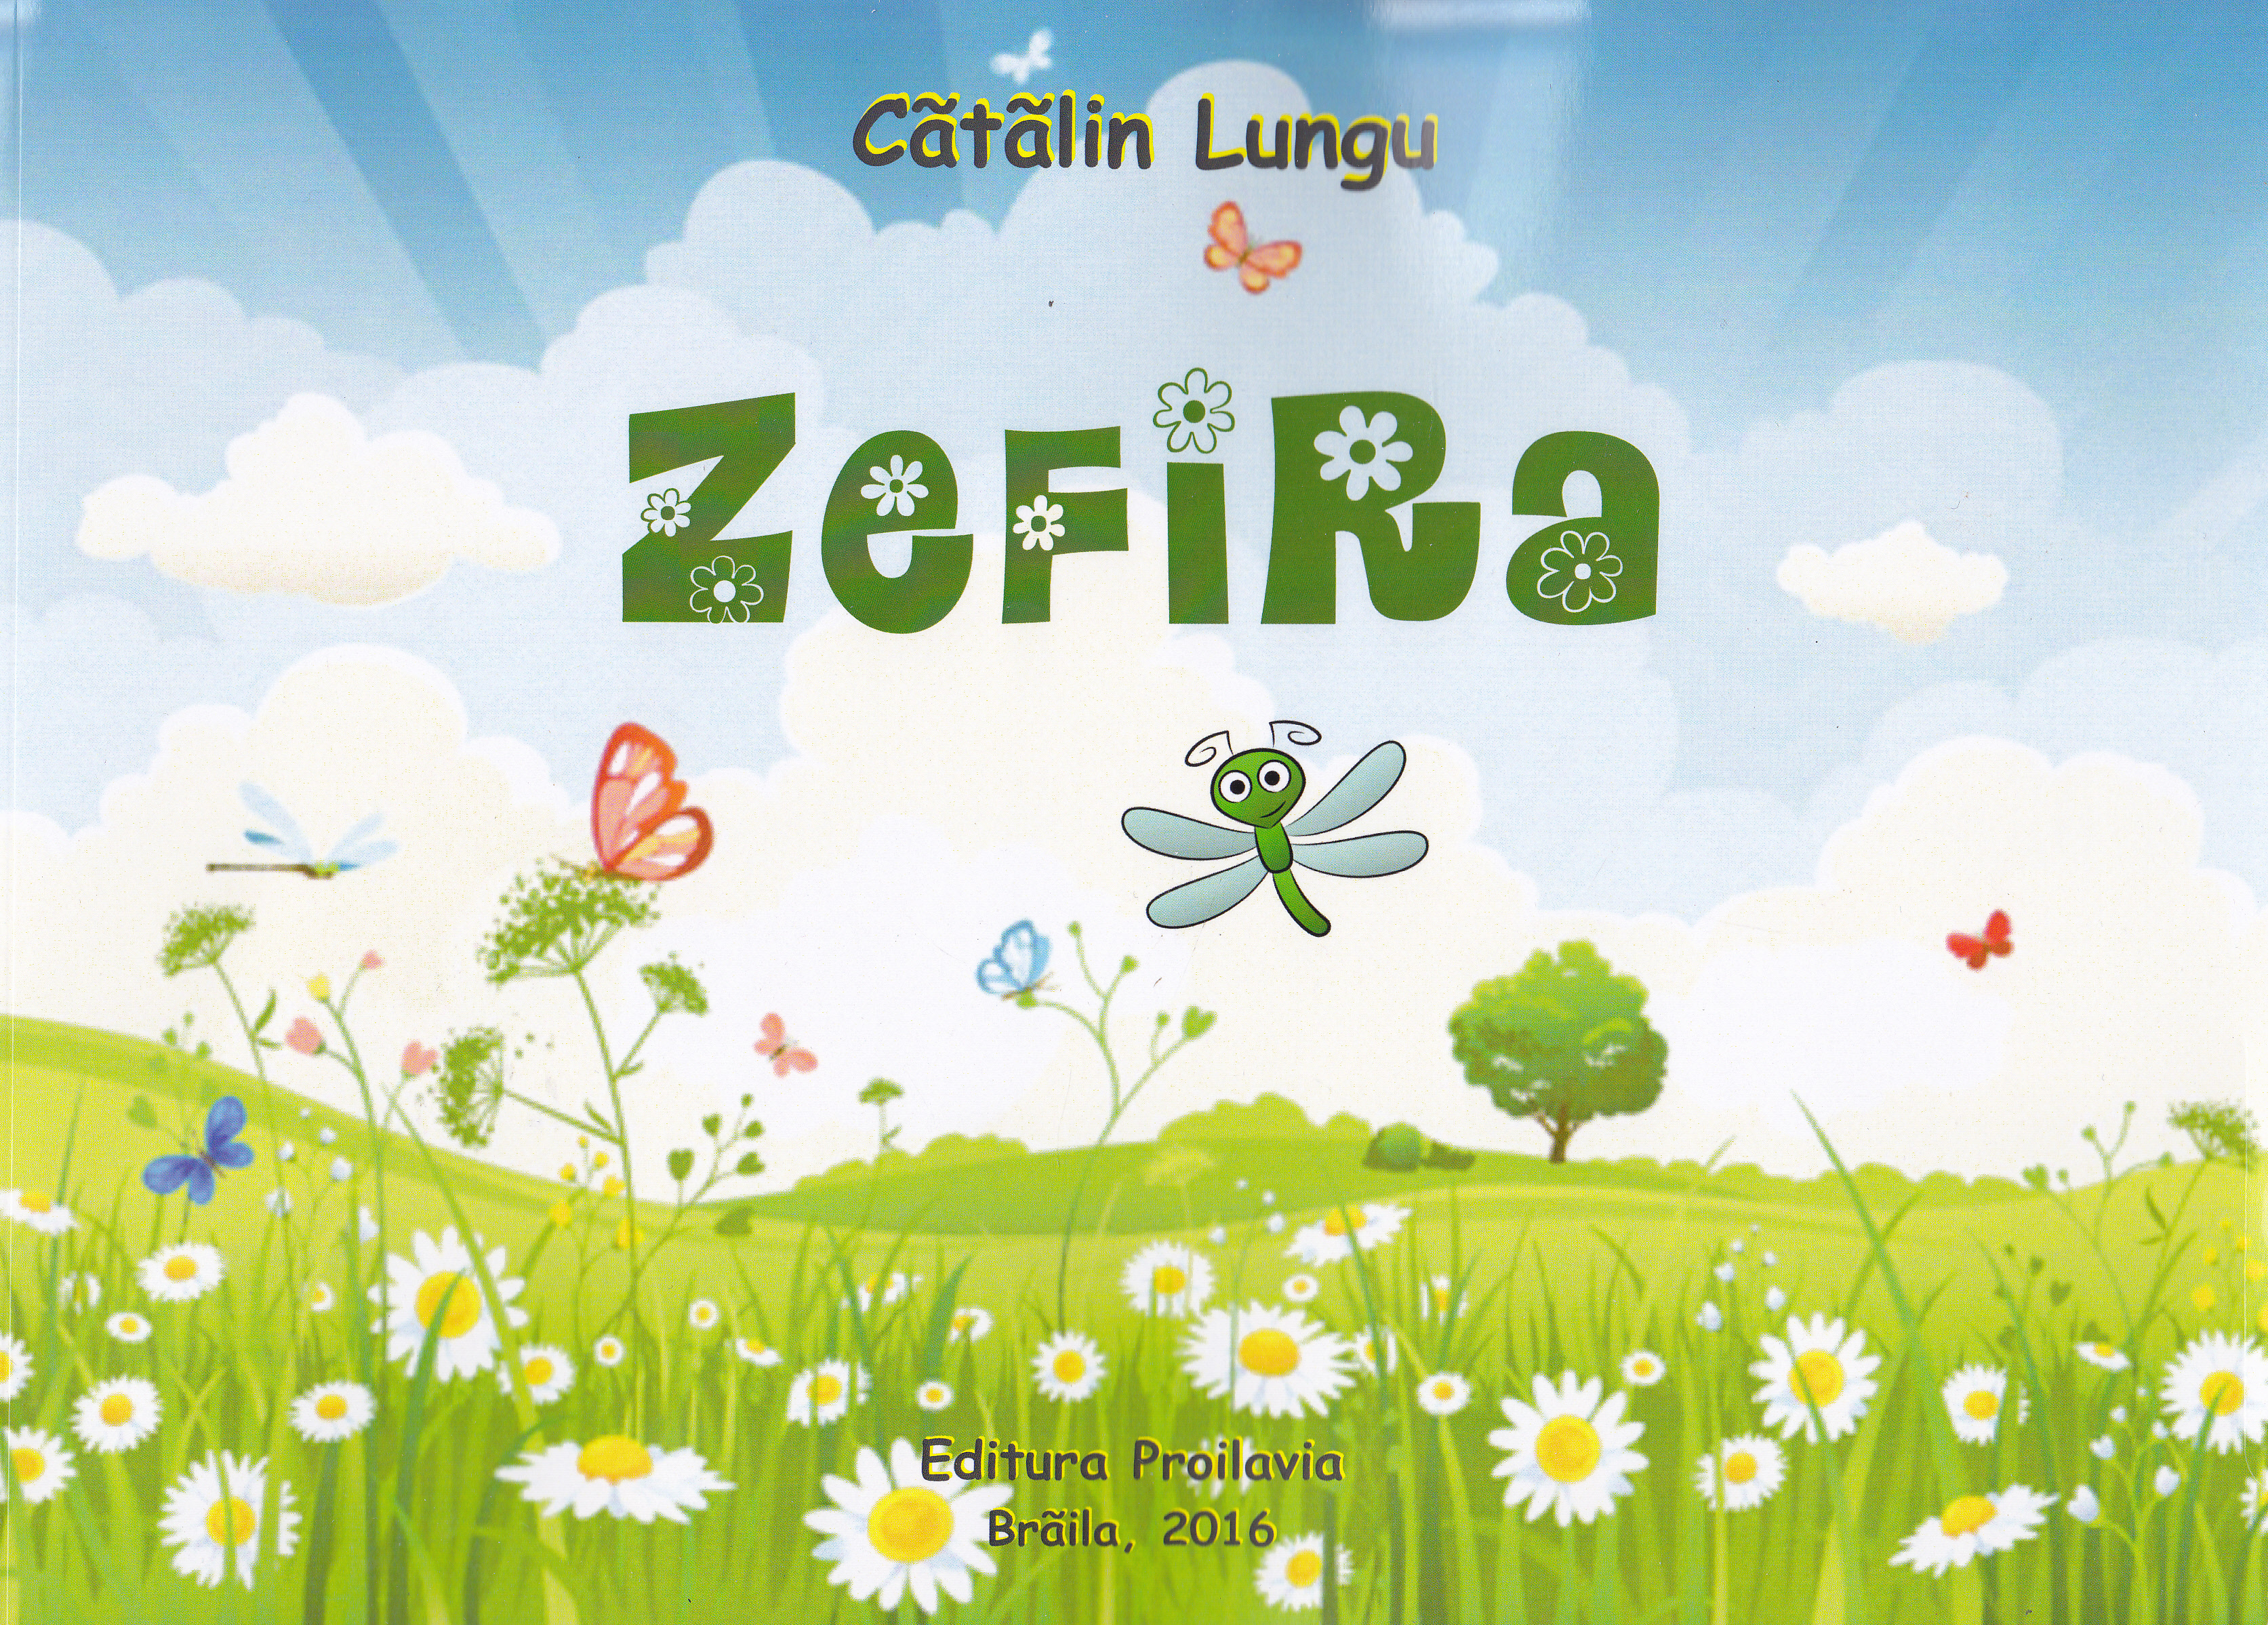 Zefira - Catalin Lungu